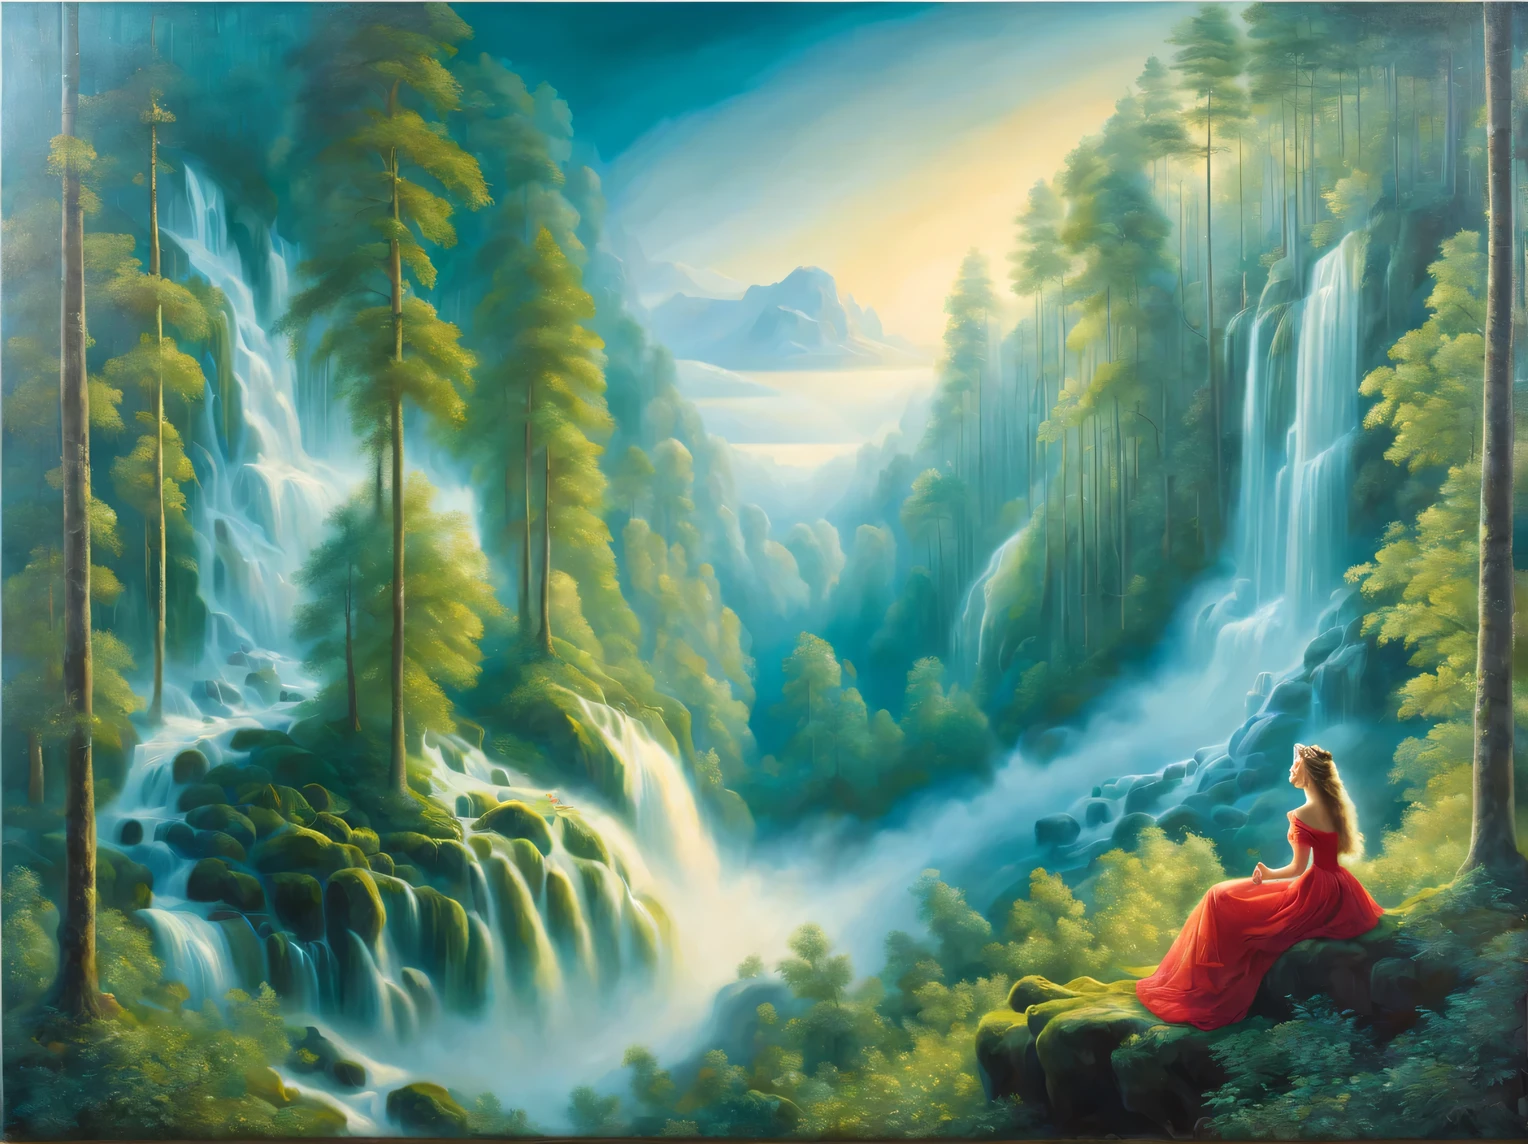 Oil painting on canvas oil painting on canvas with 二重曝露 effect, 美しい南部の王女は美しい森の滝を夢見ています, 背景にある美しい王女の霧の夢のような森の滝, ヒュー・ダグラス・ハミルトン, アレクセイ・サブラソフ, ヒョードル・ワシリエフ, ロブ・ゴンサルベス, ピーダー・モンステッド, 二重曝露:1.3